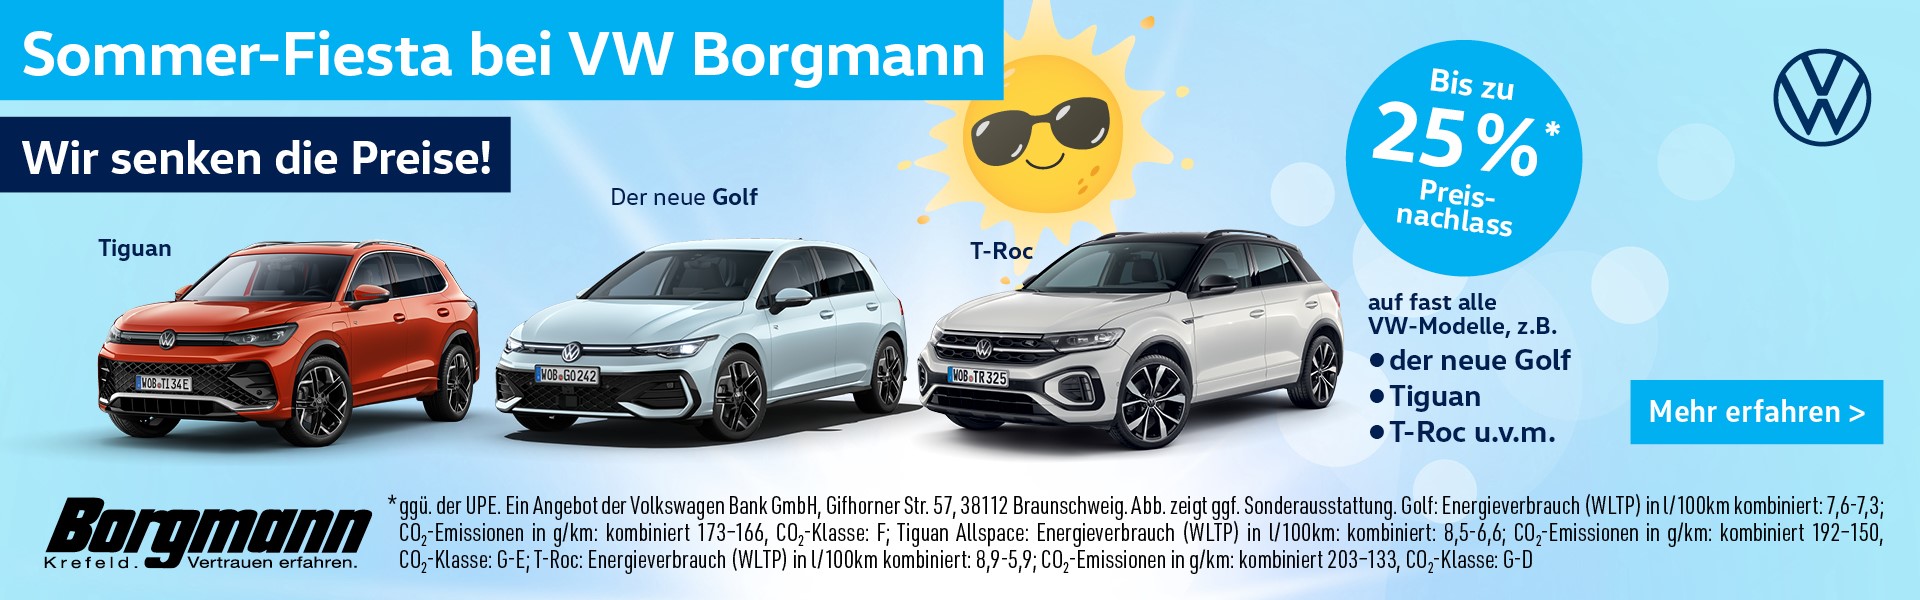 VW Sommerfiesta - Wir senken die Preise!